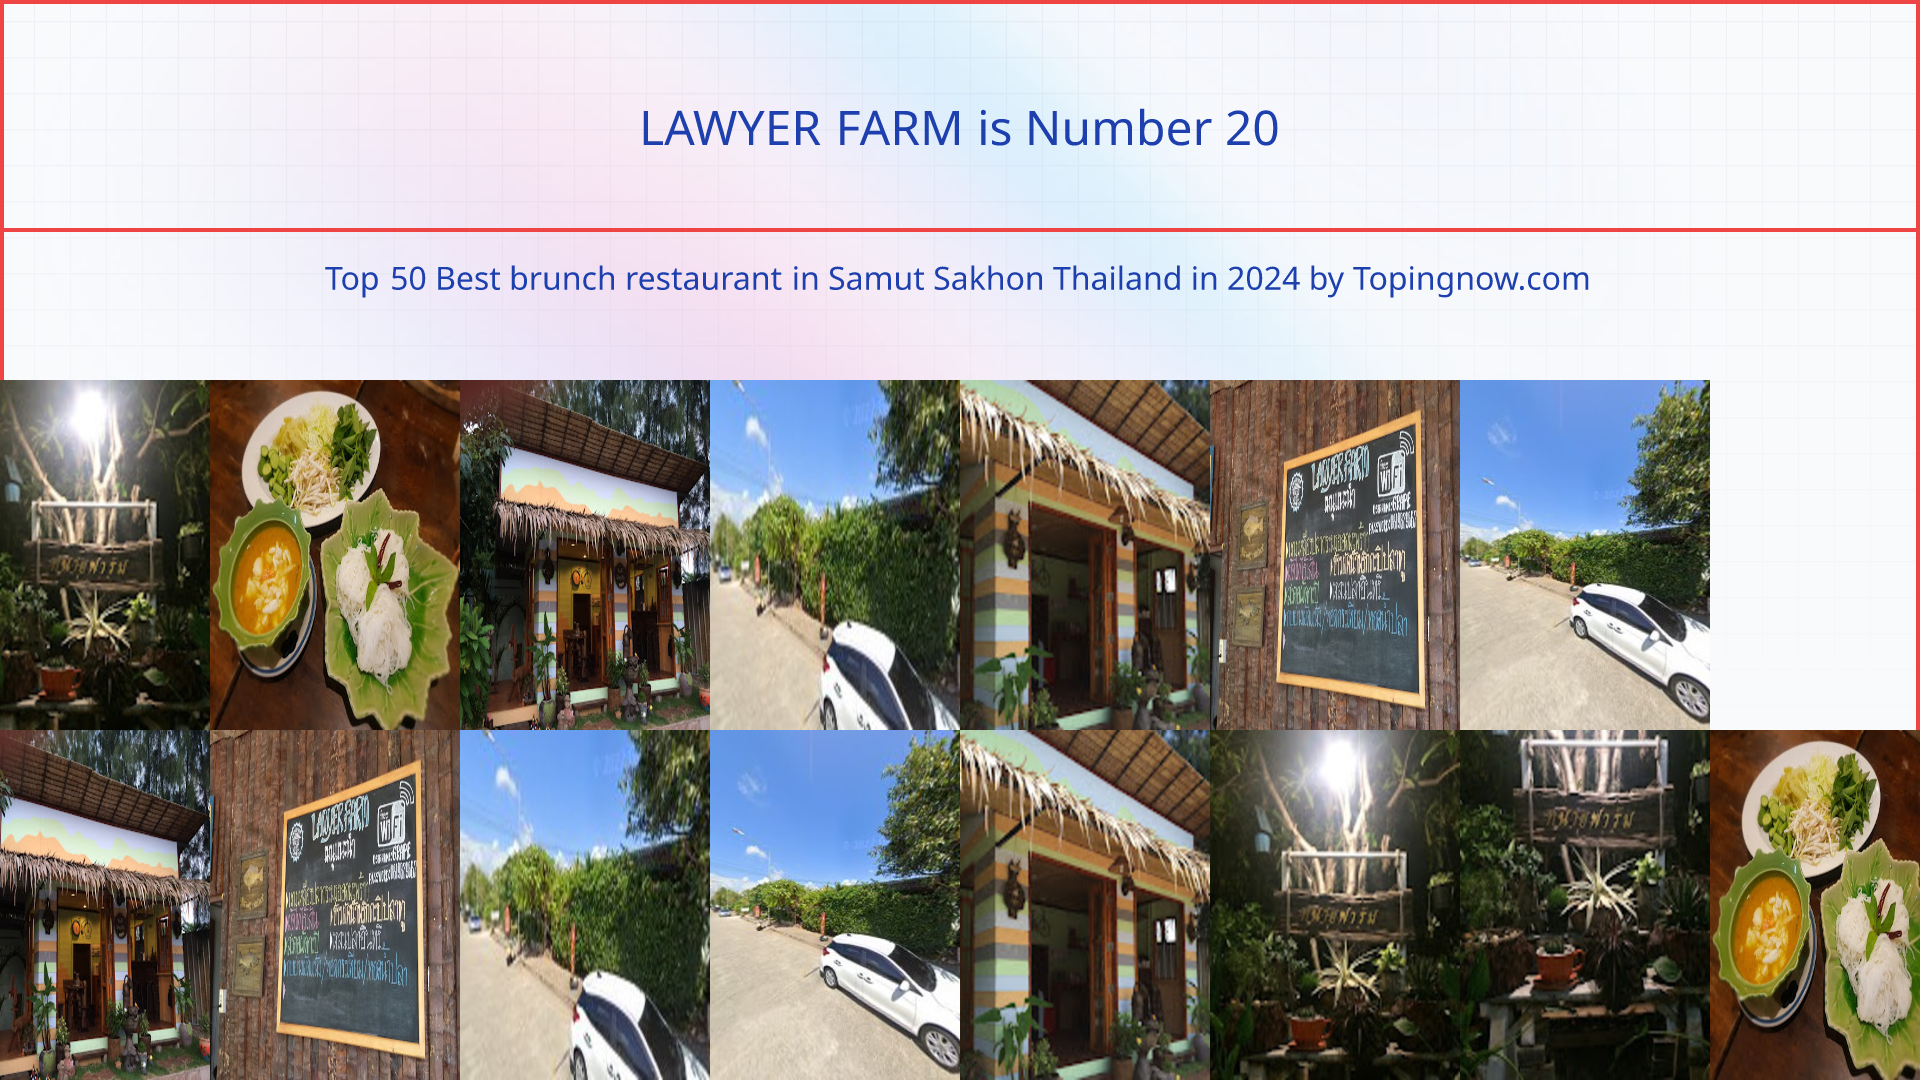 LAWYER FARM: Top 50 Best brunch restaurant in Samut Sakhon Thailand in 2024